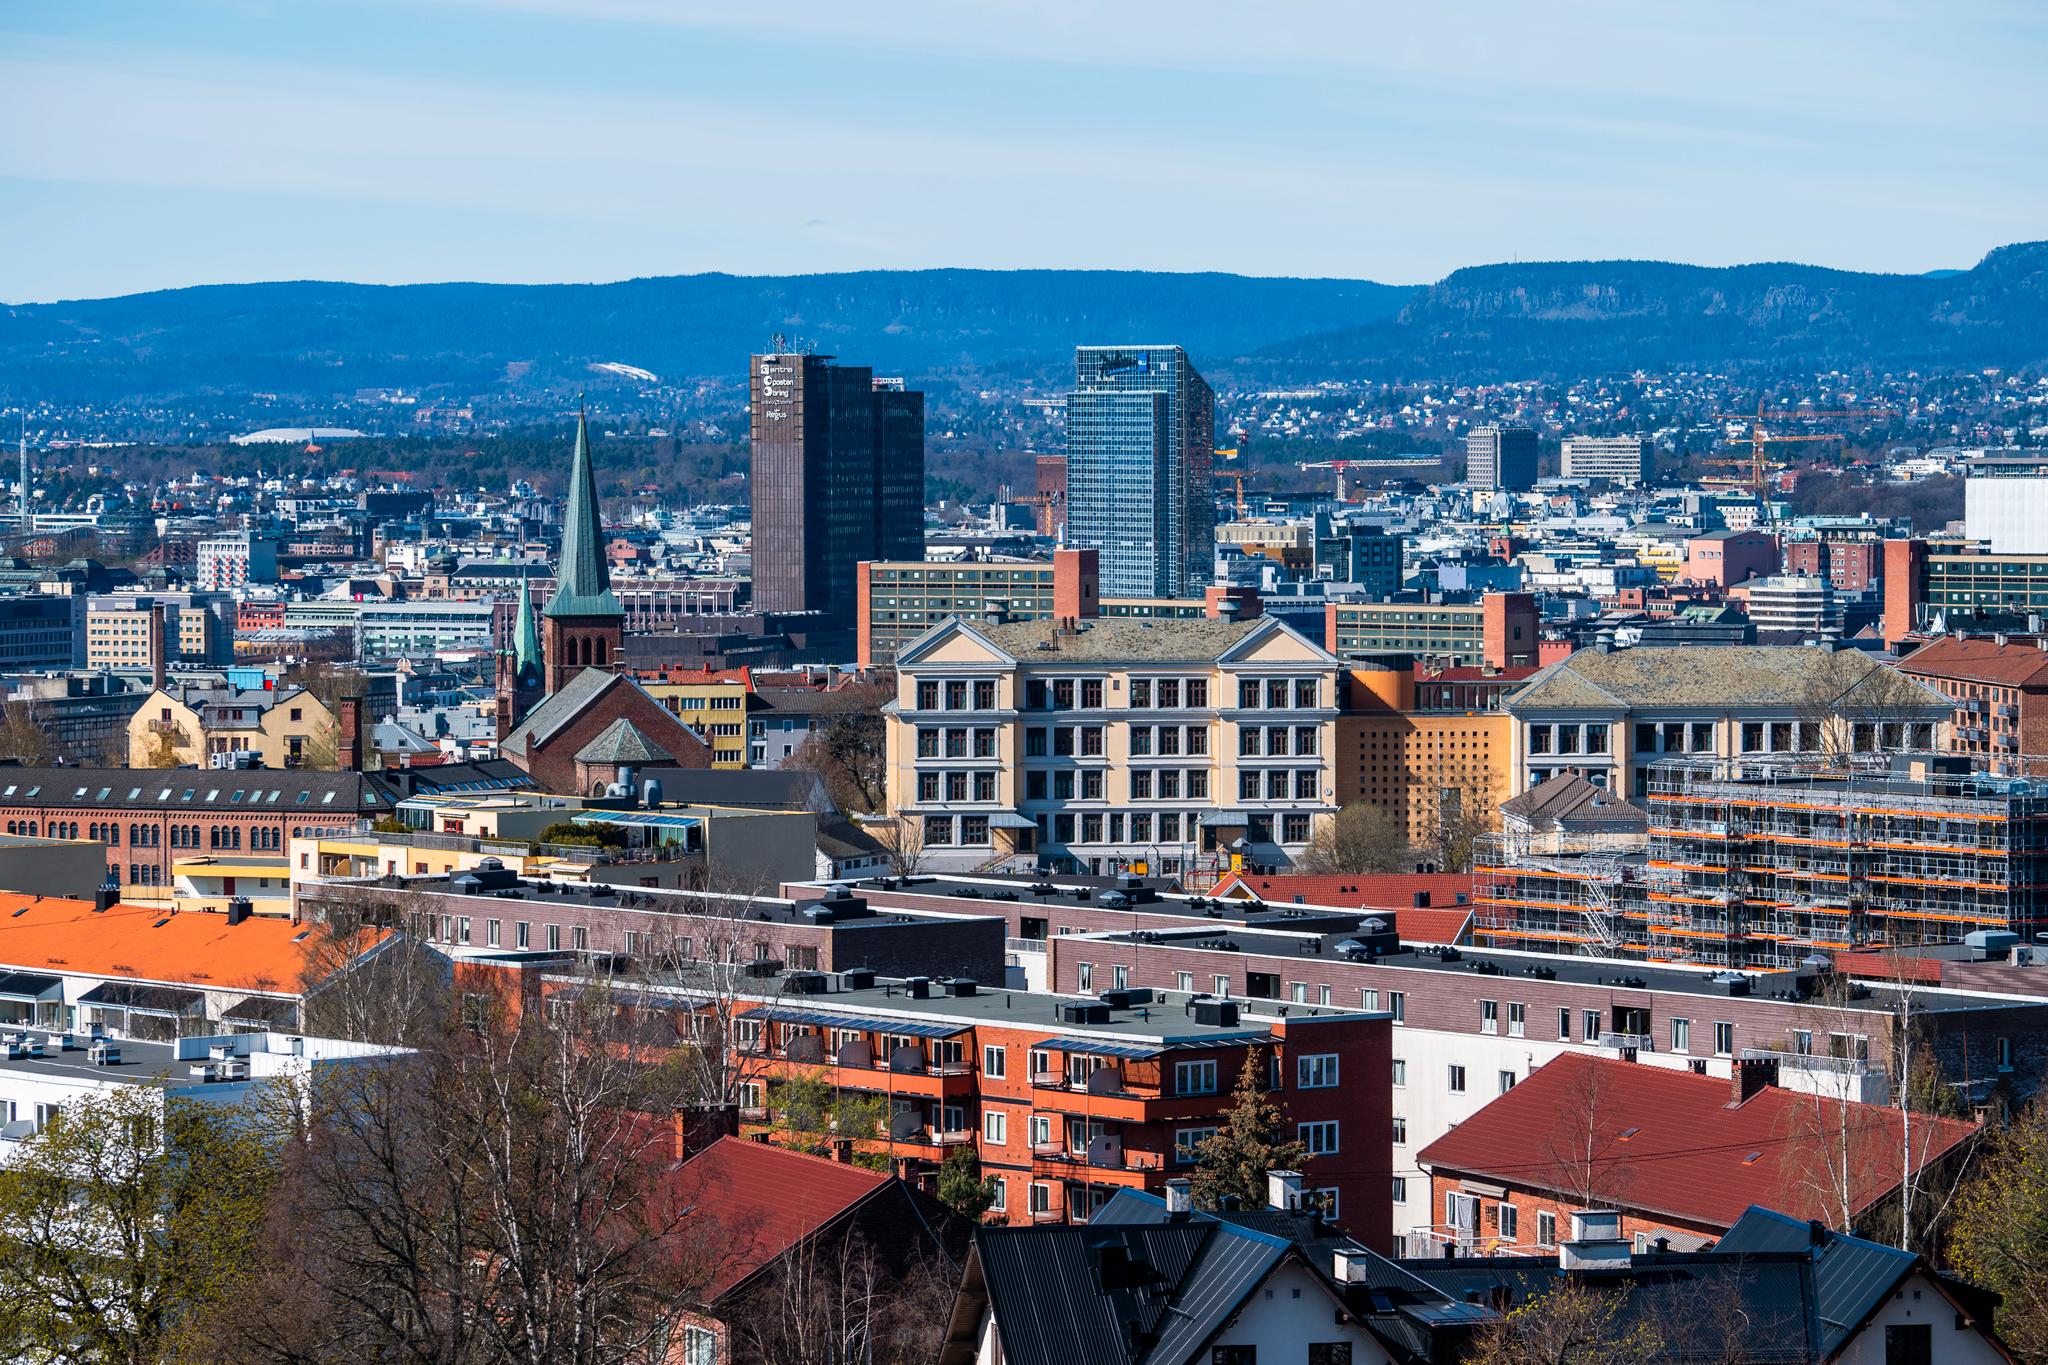 Mens Bergens kvadratmeterpris er på 55.000 kroner, er Oslos på 94.000 kroner. Det er lett å bli sjokkert, skriver Erling Røed Larsen.